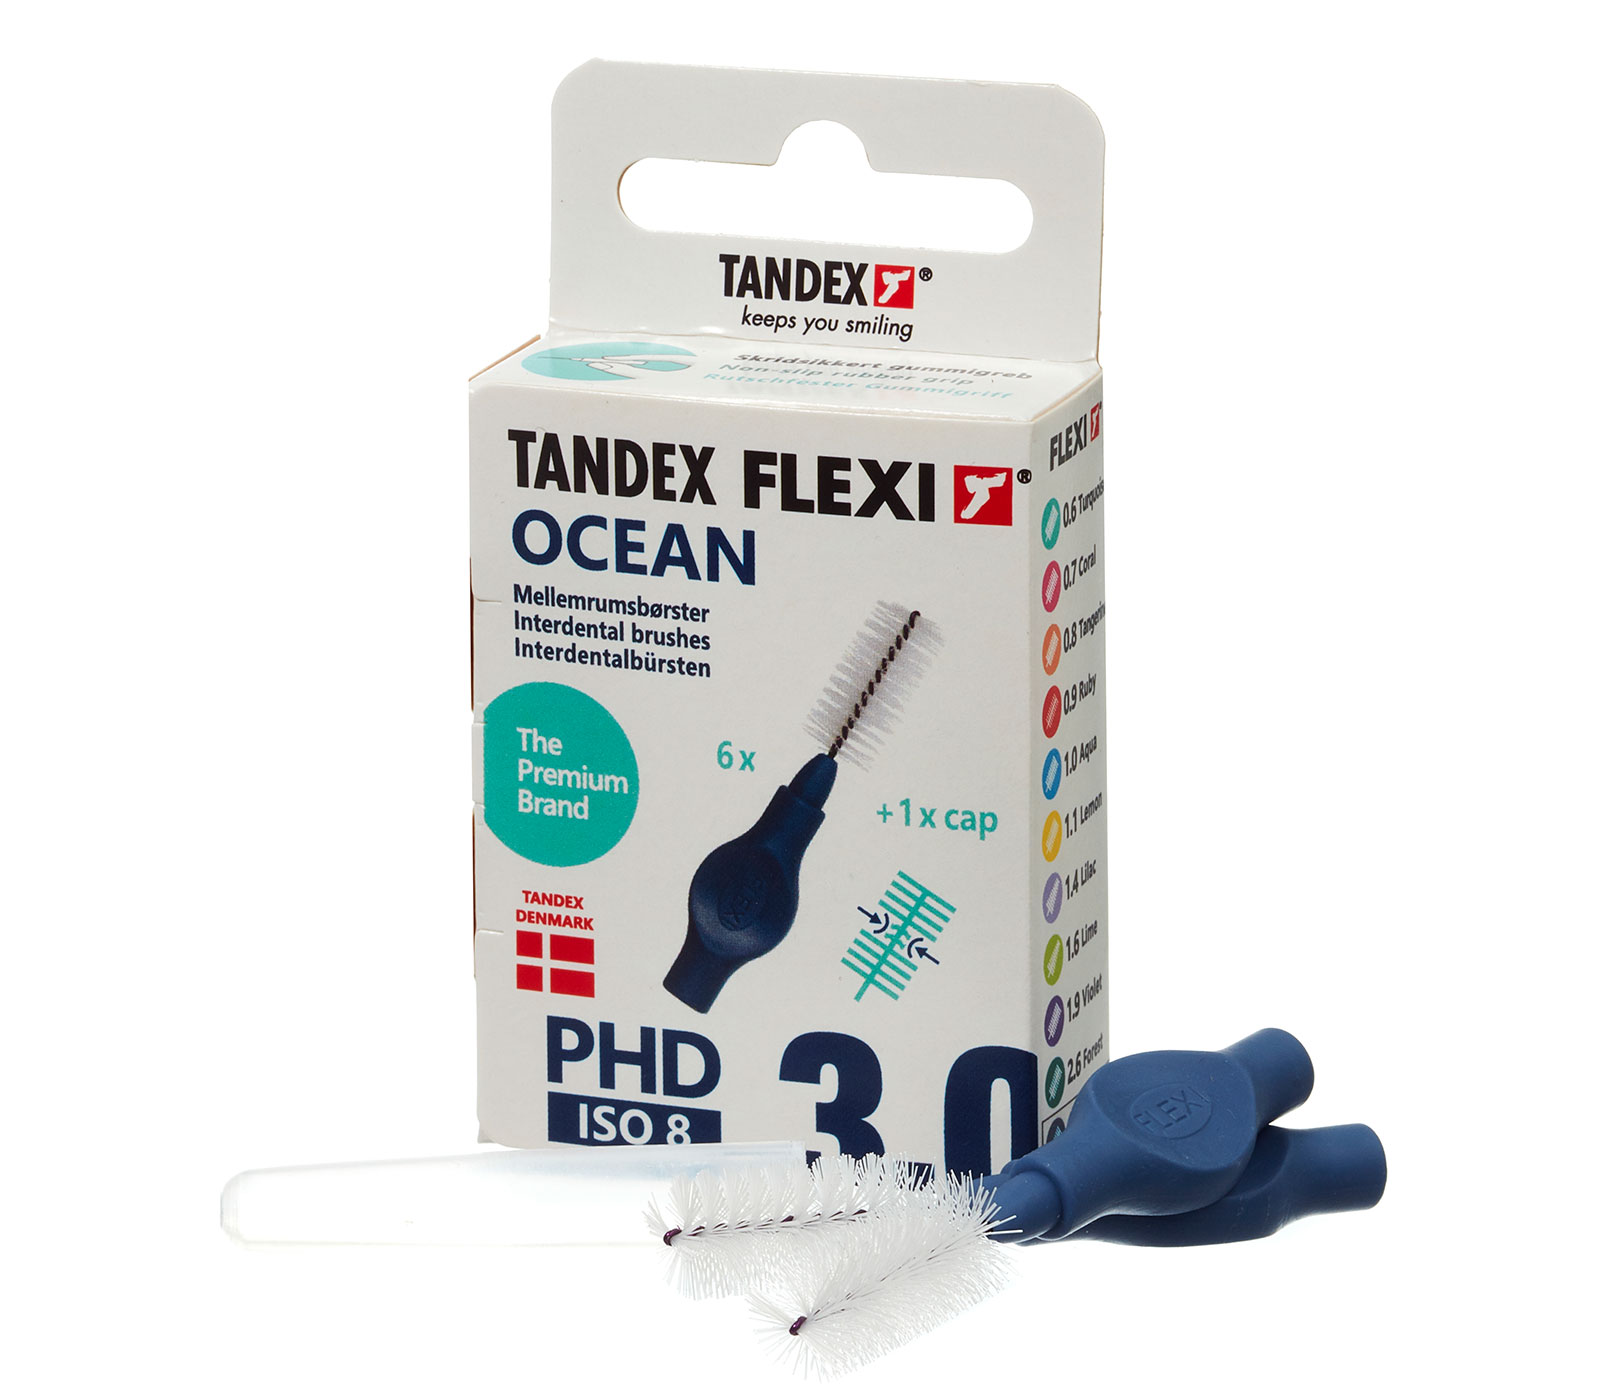 Tandex Flexi Ocean 1